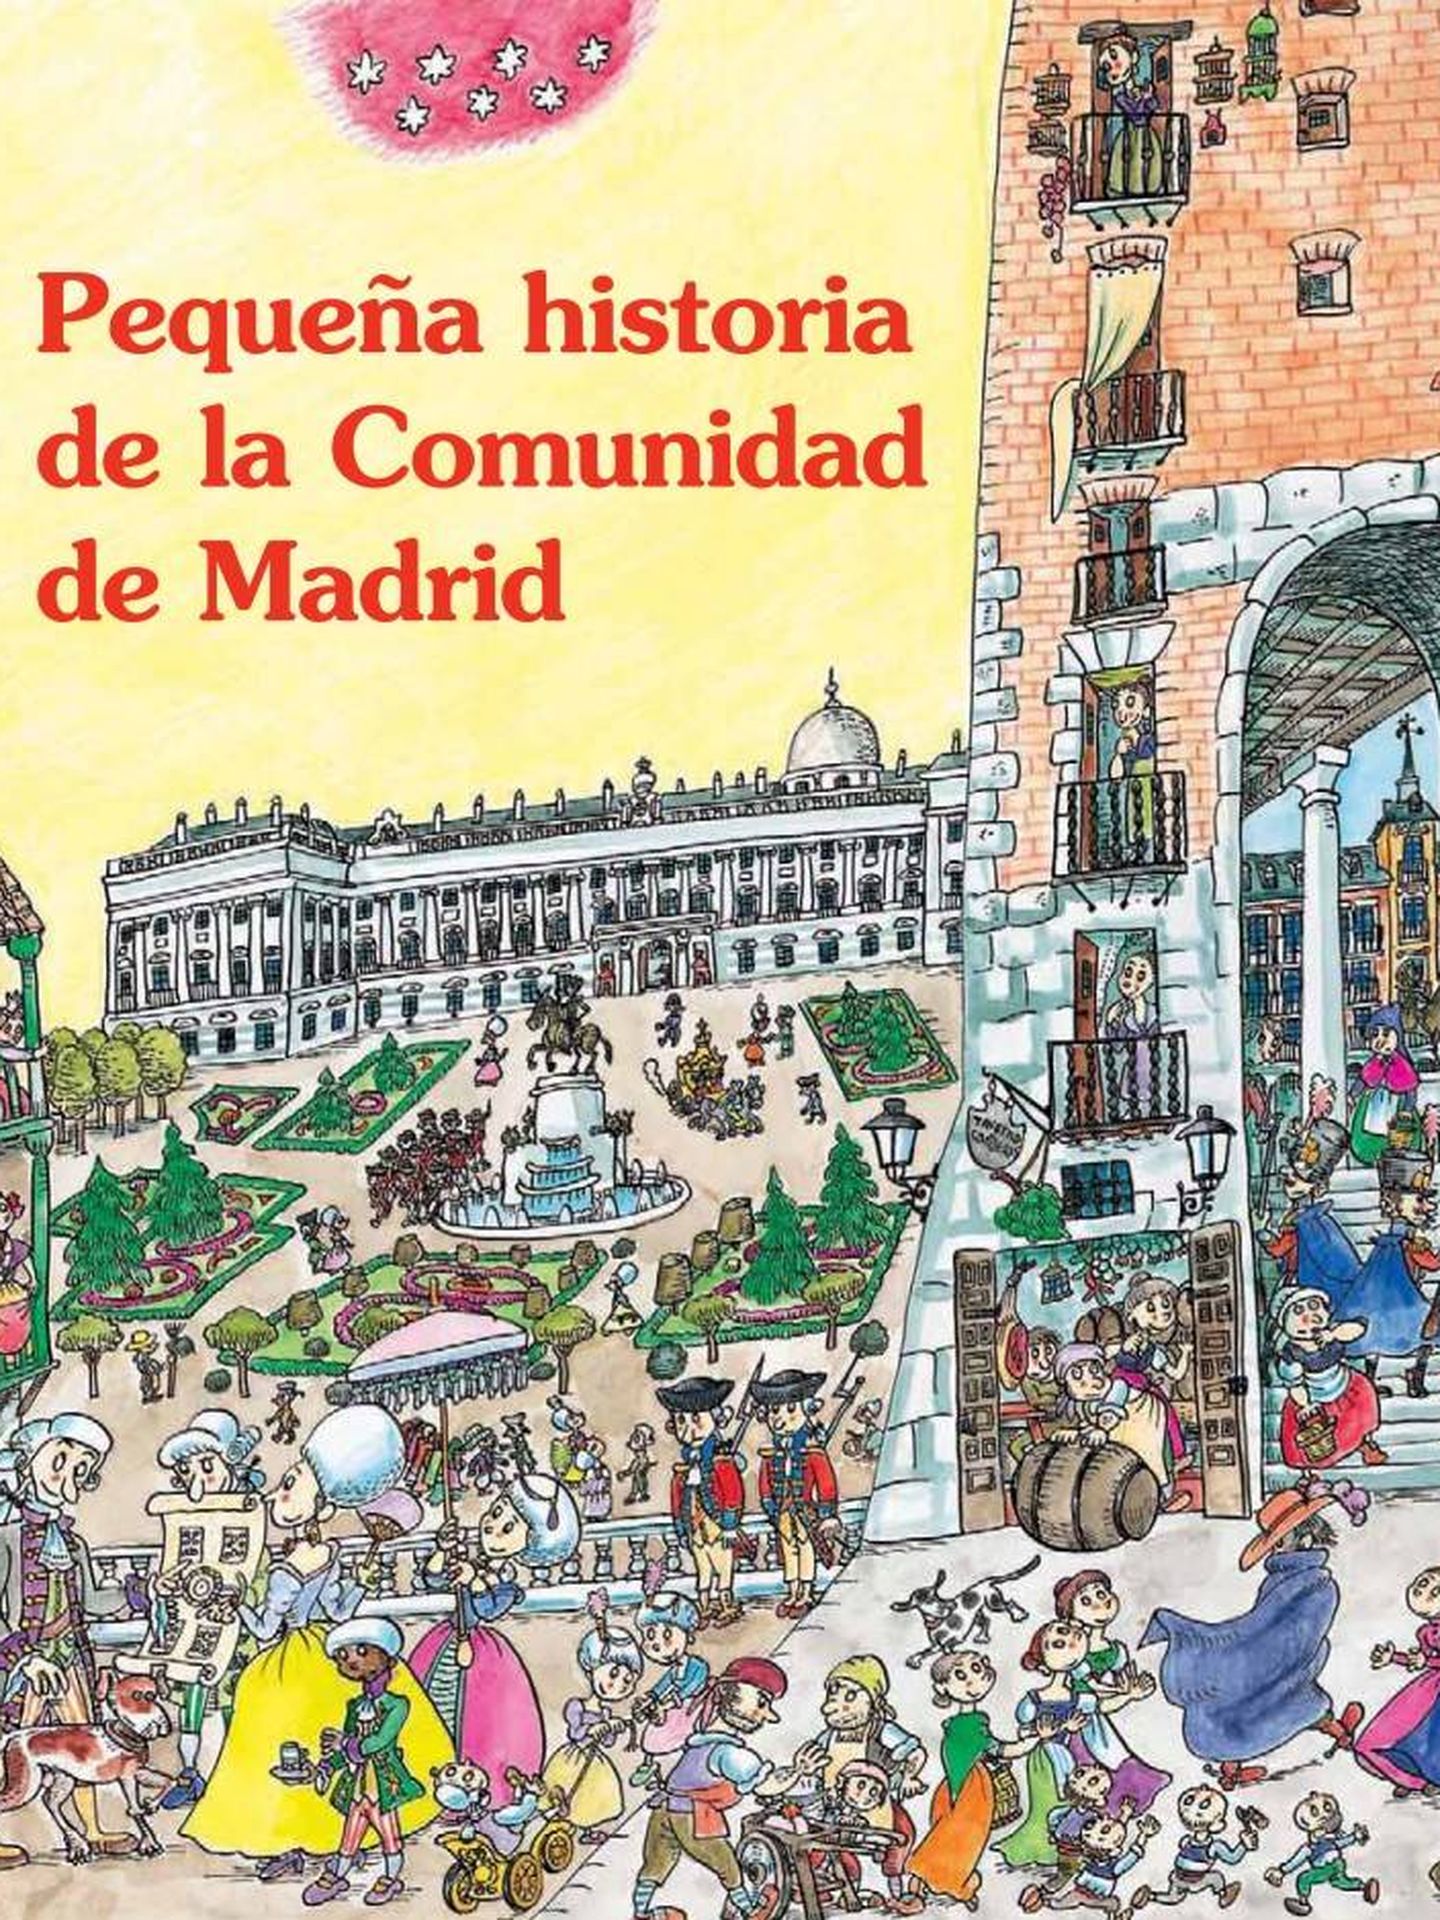 Libro ilustrado por Pilarín Bayés sobre la historia de la comunidad madrileña. 